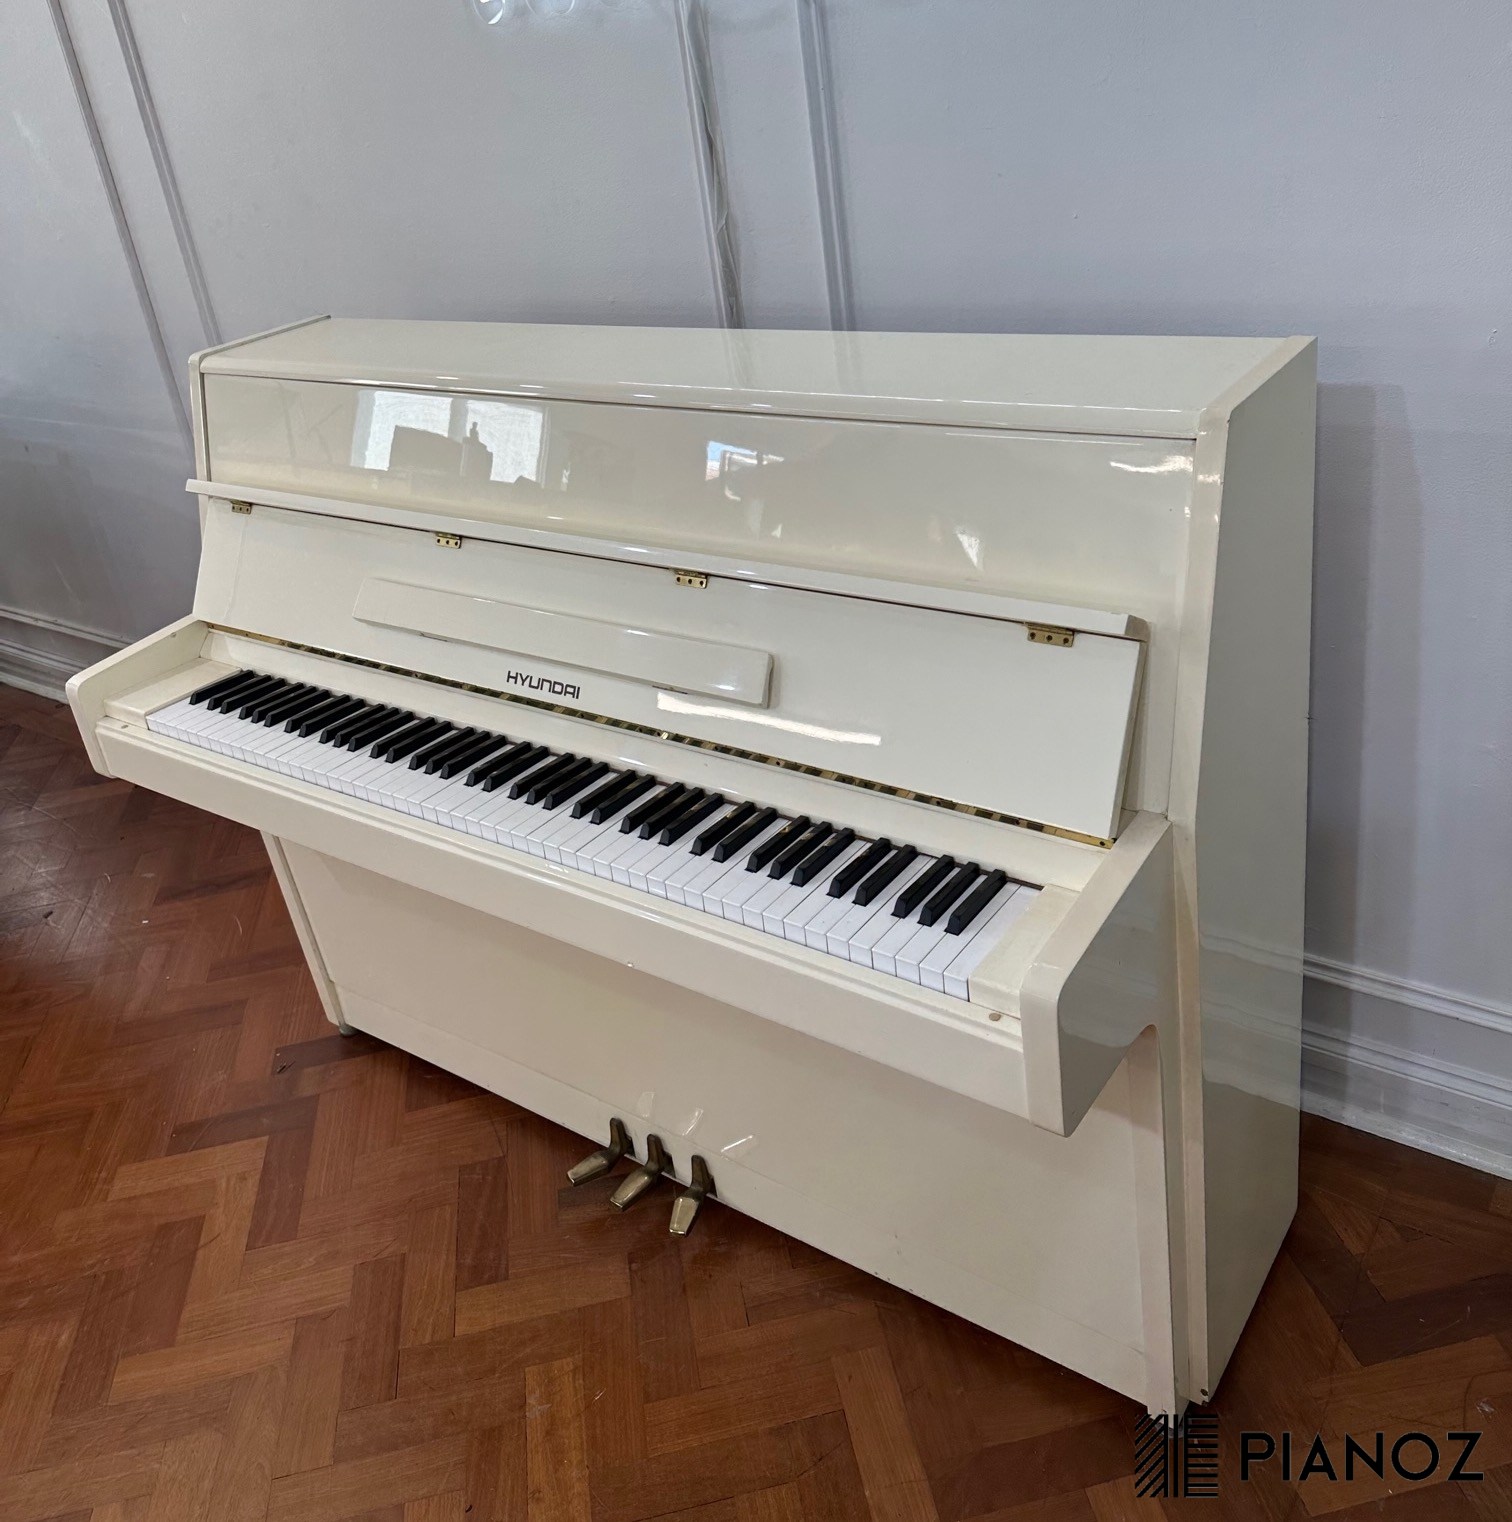 Hyundai White Upright Piano piano for sale in UK